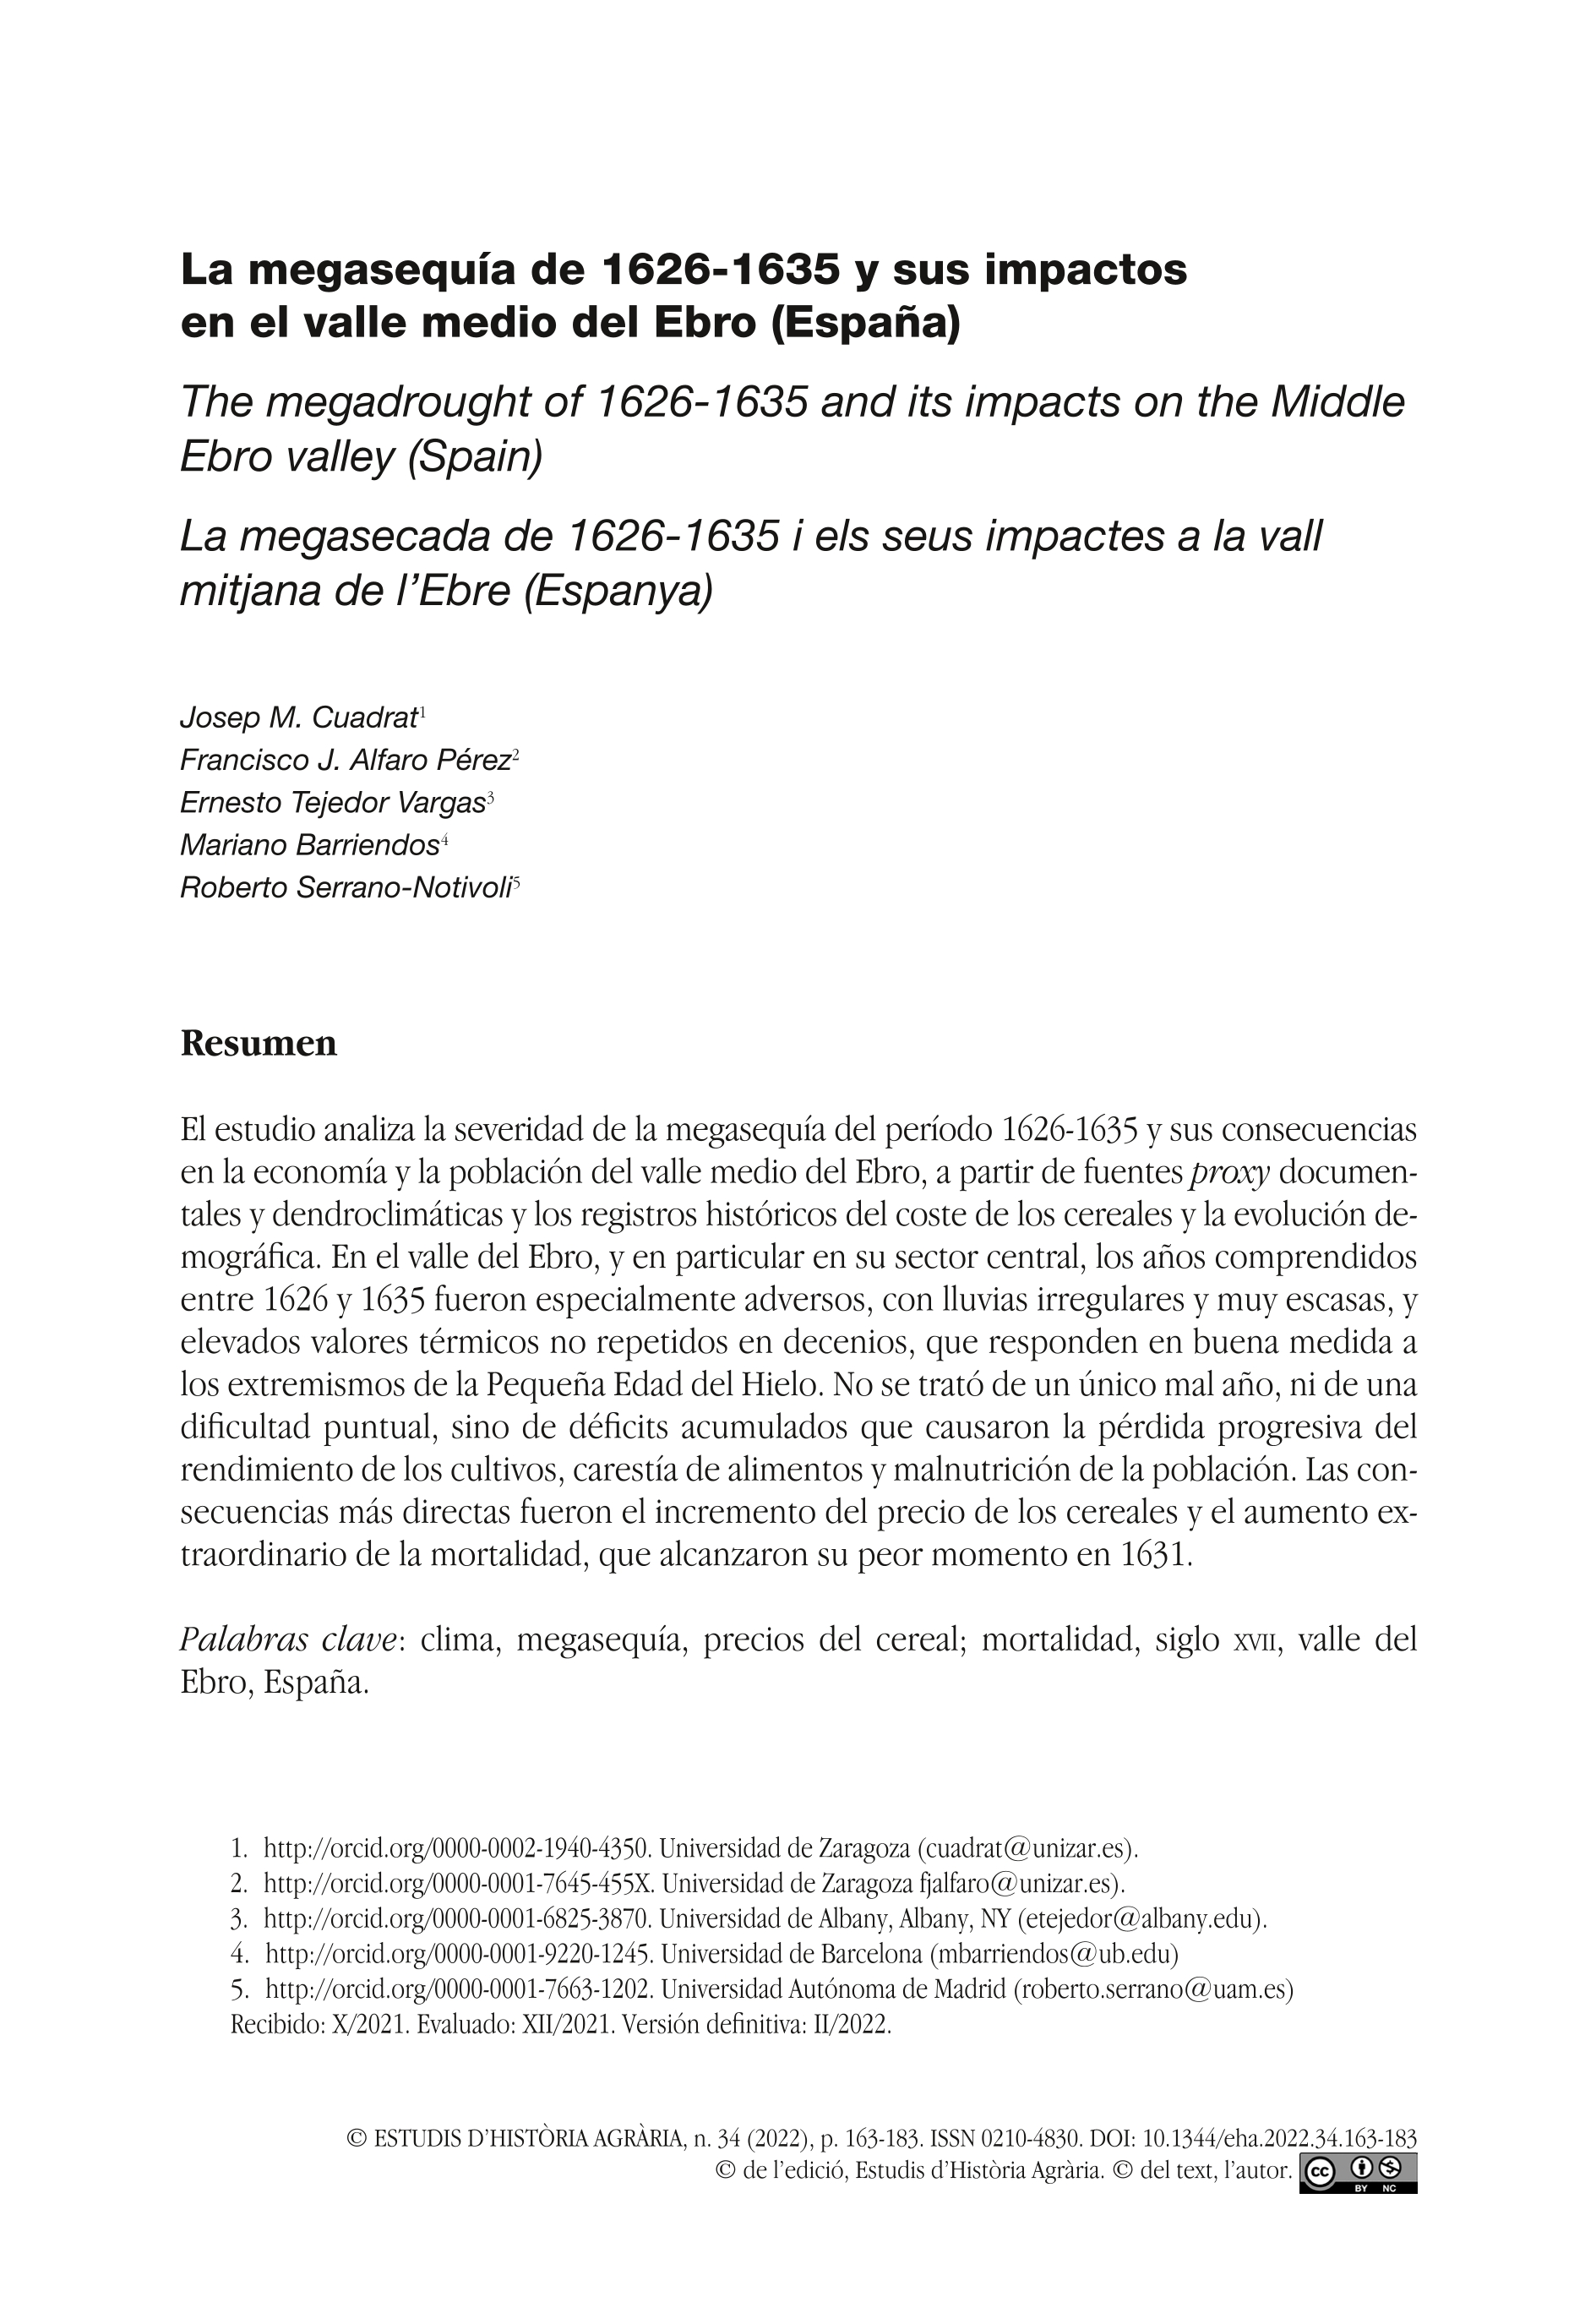 La megasequía de 1626-1635 y sus impactos en el valle medio del Ebro (España)